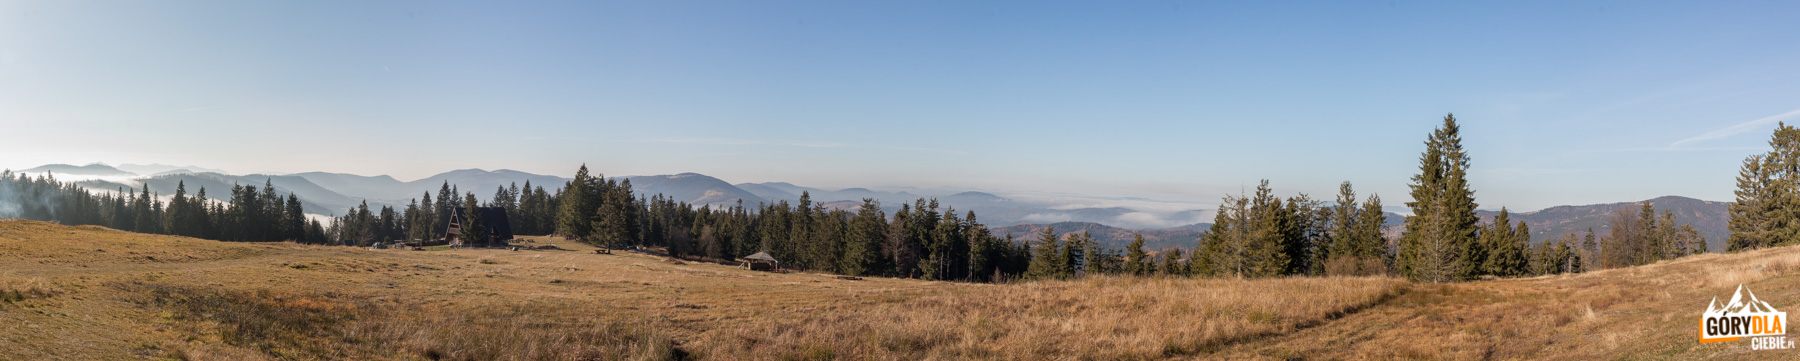 Panorama z górnej części Hali Krawcula: od lewej Oszust (1155 m), Mała Fatra, Świtkowa (1082 m), Rycerzowa Wielka (1226 m) i Rycerzowa Mała (1207 m), Muńcuł (1165 m), Praszywka Wielka (1043 m), Magura (1073 m), Oźna (952 m), Rochowiec (954 m) i Sucha Góra (1040 m), Sucha Góra (1040), Redykalny Wierch (1144 m), Boraczy Wierch (1244 m) na horyzoncie grań Beskidu Śląskiego od Baraniej Góry (1220 m) po Skrzyczne (1257 m), na hali Bacówka PTTK